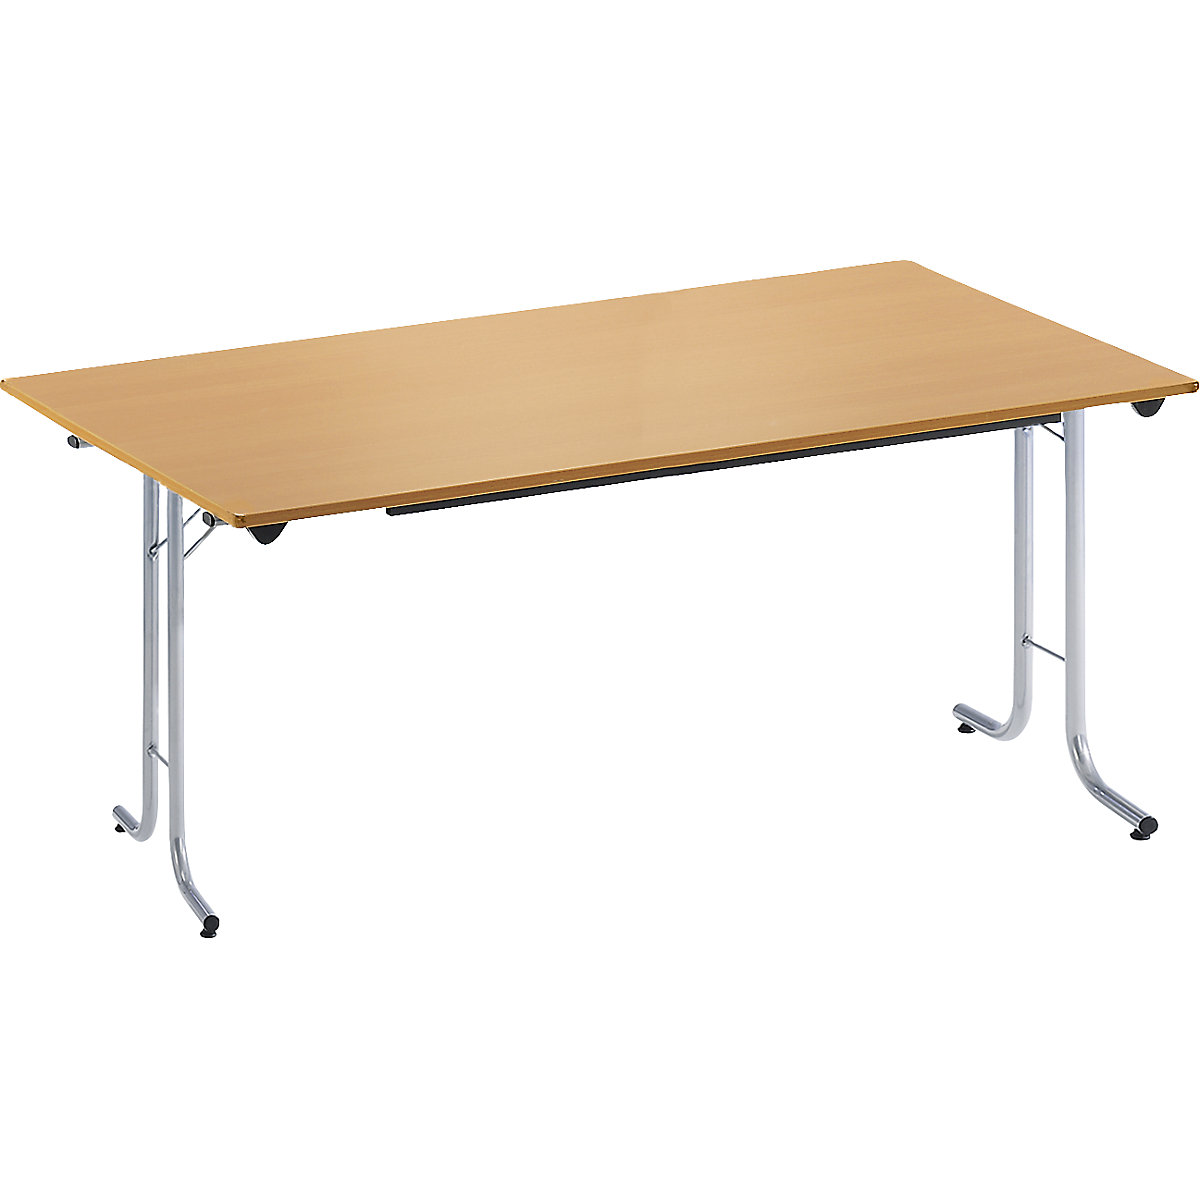 Inklapbare tafel, met afgeronde randen, tafelpoten van staalbuis, bladvorm rechthoekig, 1400 x 700 mm, frame aluminiumkleurig, blad beukenhoutdecor-16